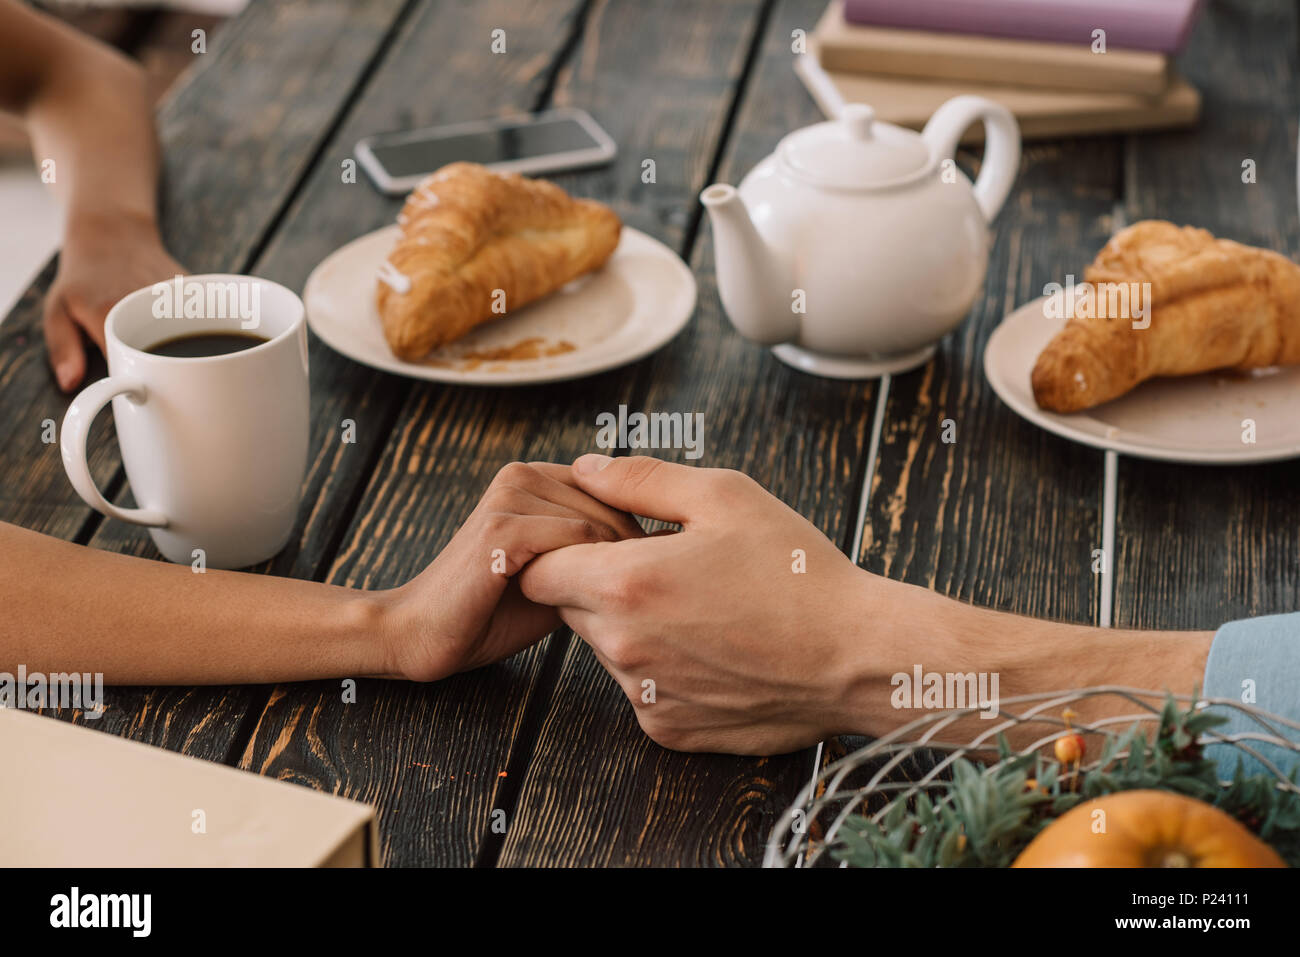 Close-up view of couple holding hands on table avec petit déjeuner Banque D'Images